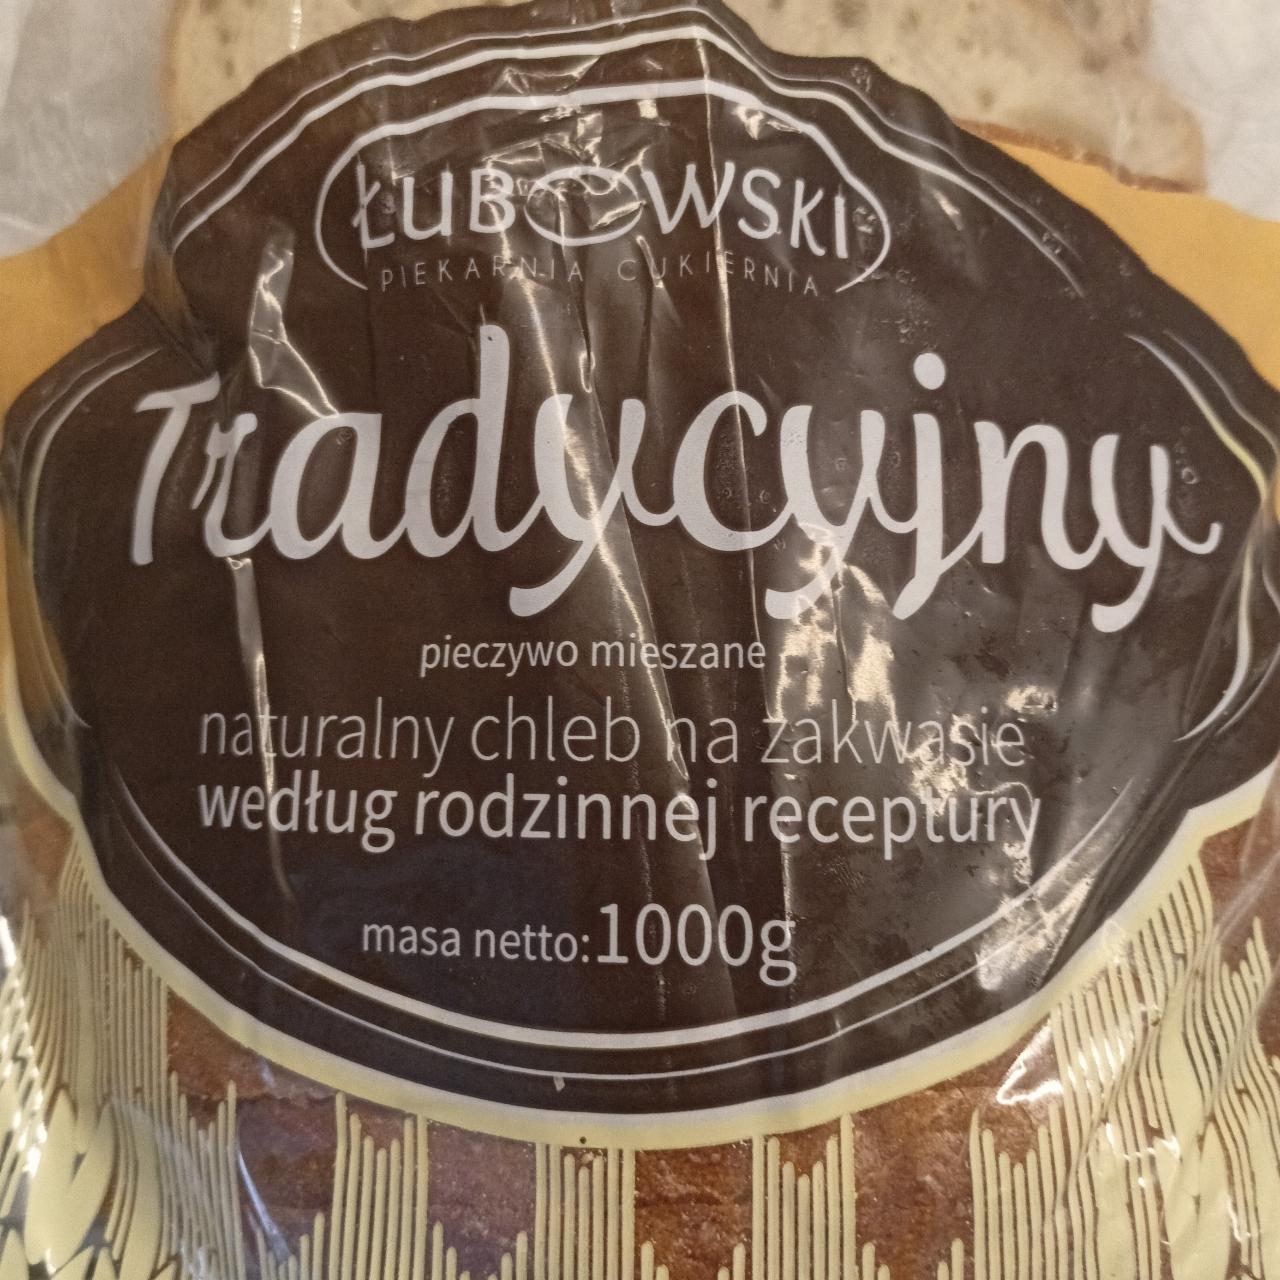 Zdjęcia - Naturalny chleb na zakwasie Tradycyjny Łubowski